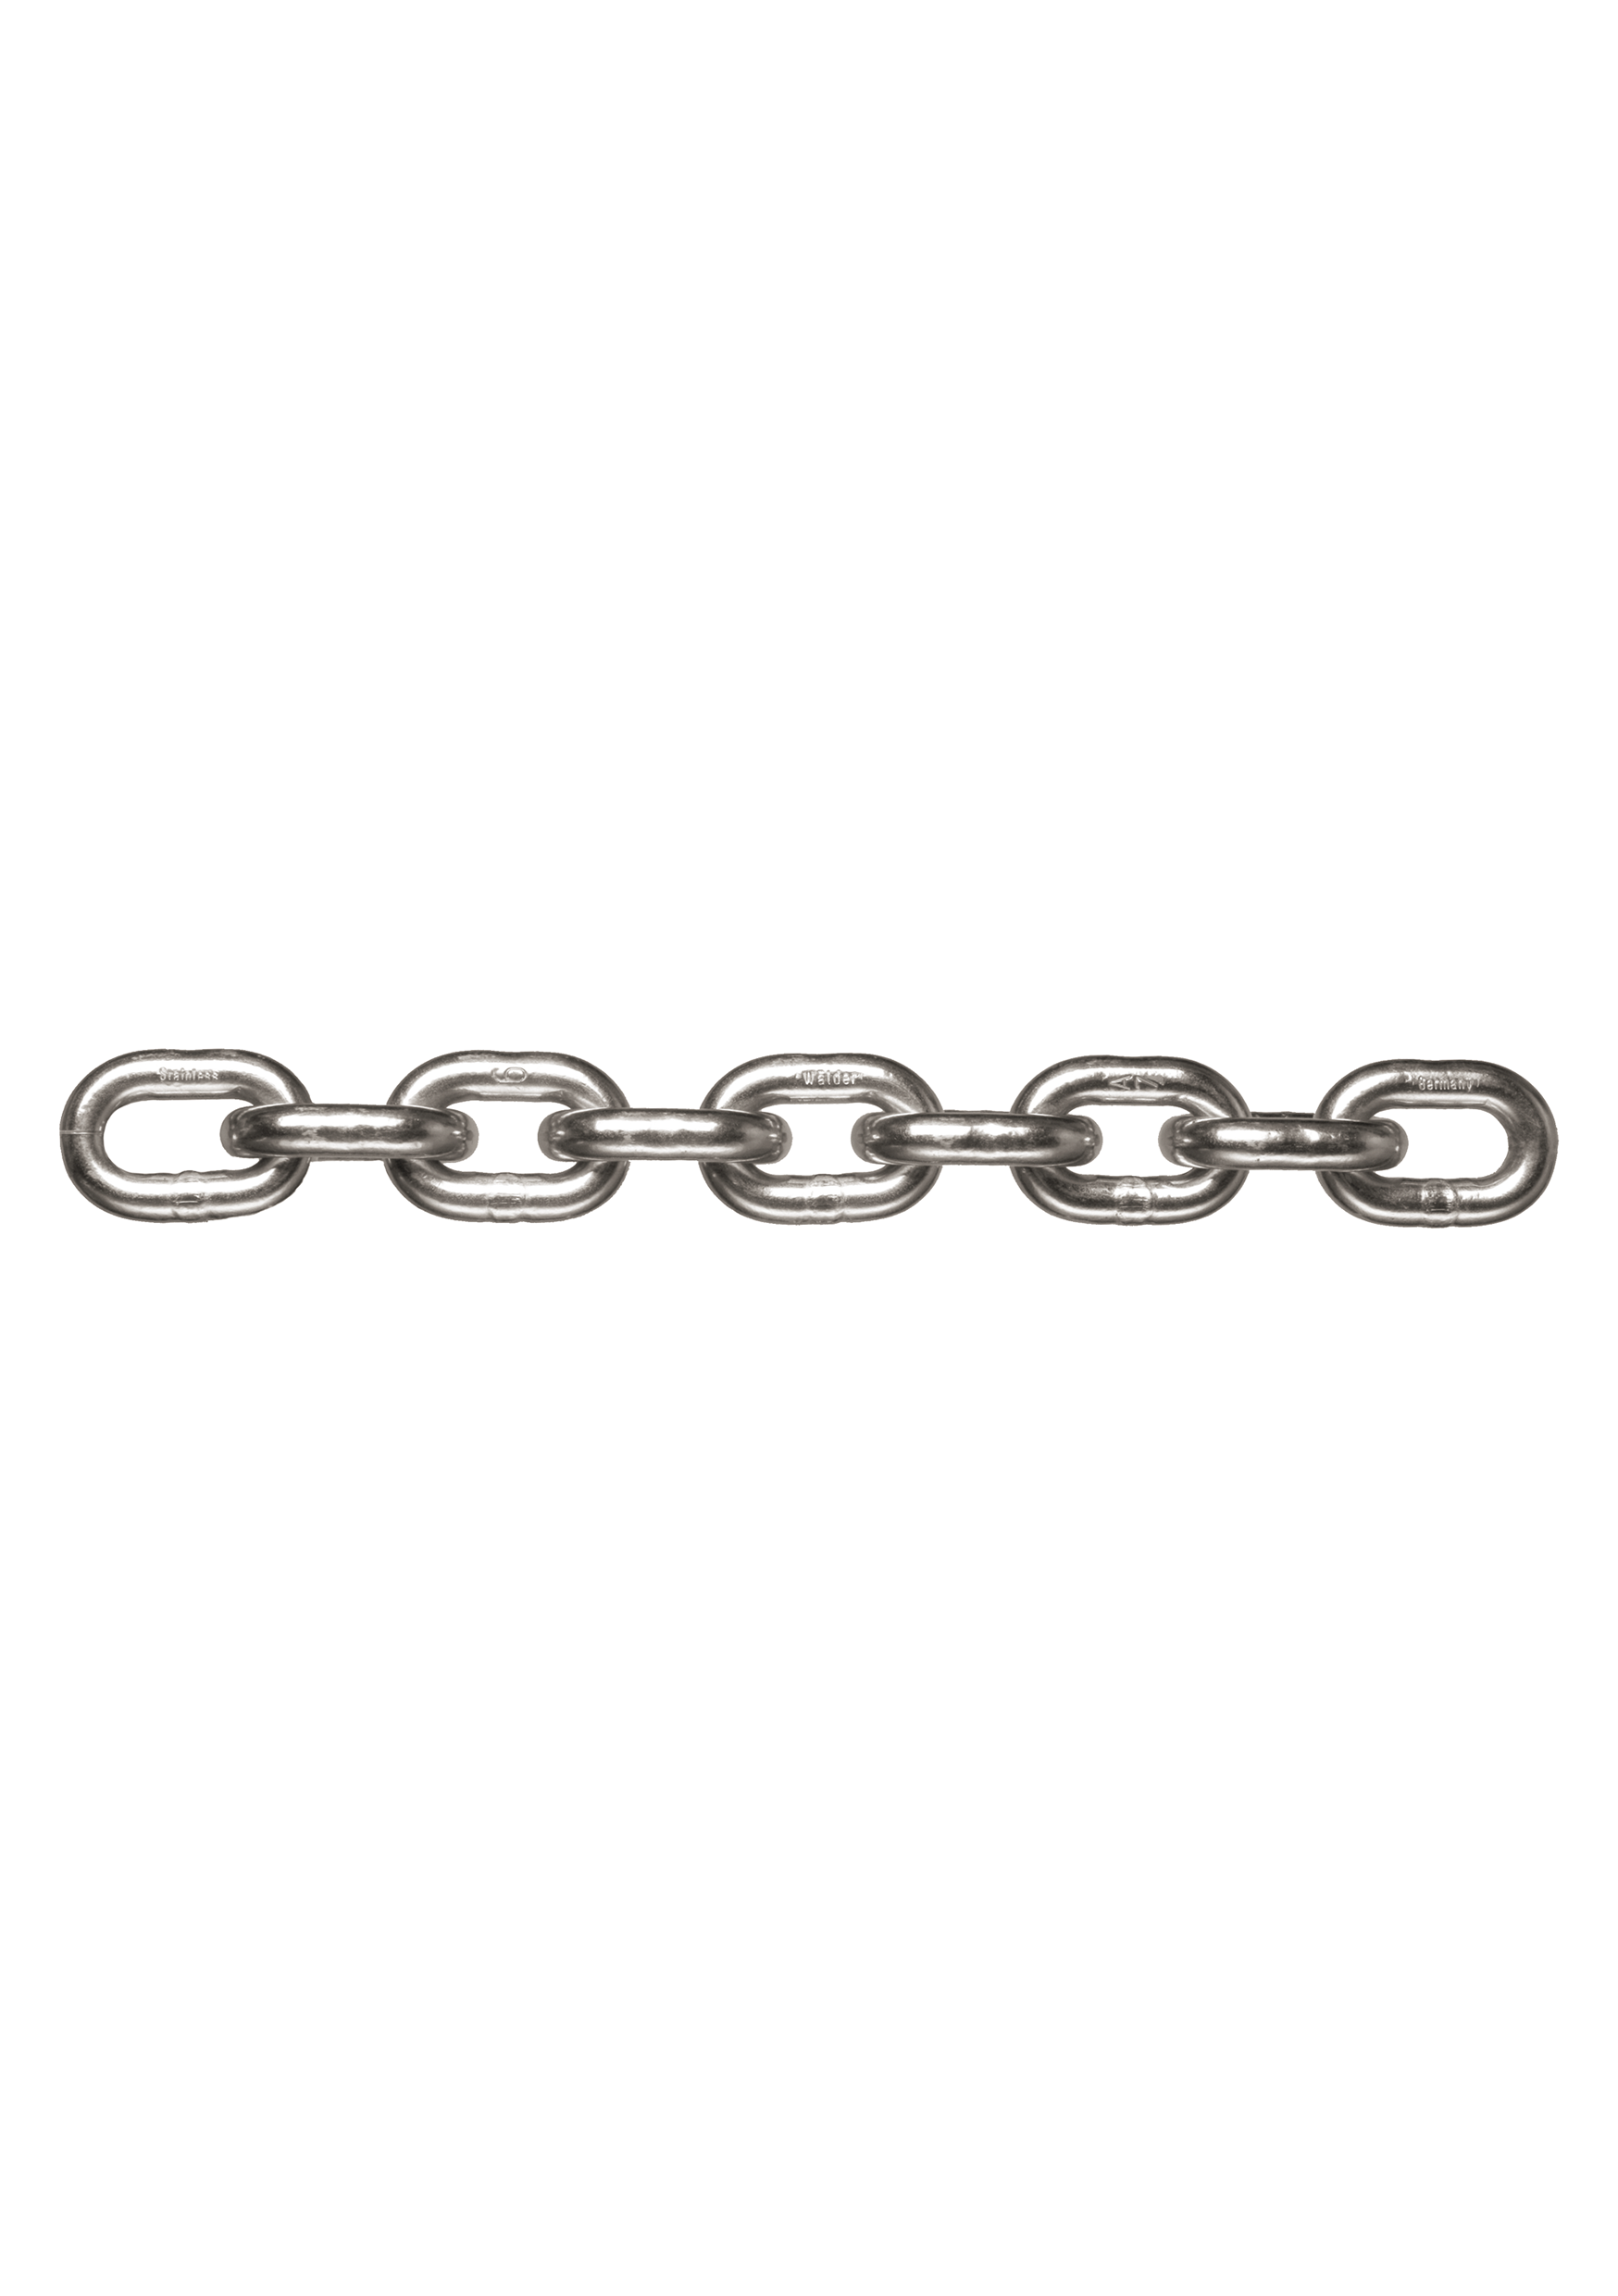 Grade 60 Forerunnner Chains CKV